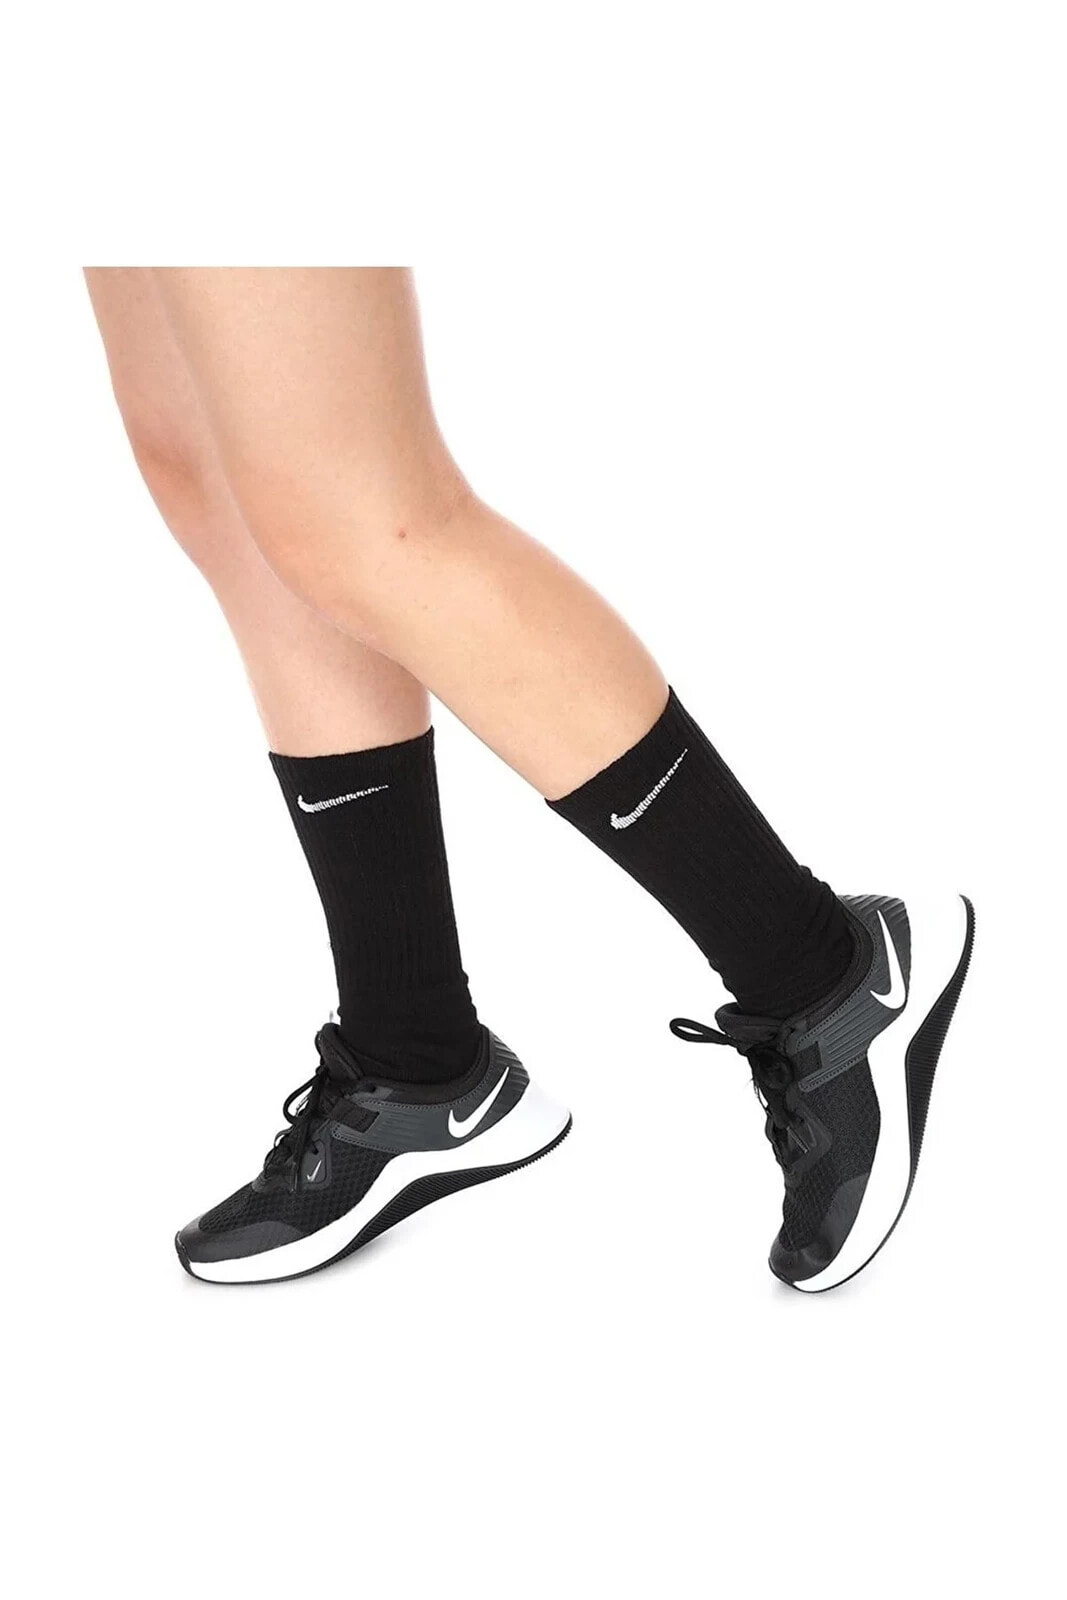 Mc Trainer Unisex Spor Ayakkabı Siyah Cu3584-004